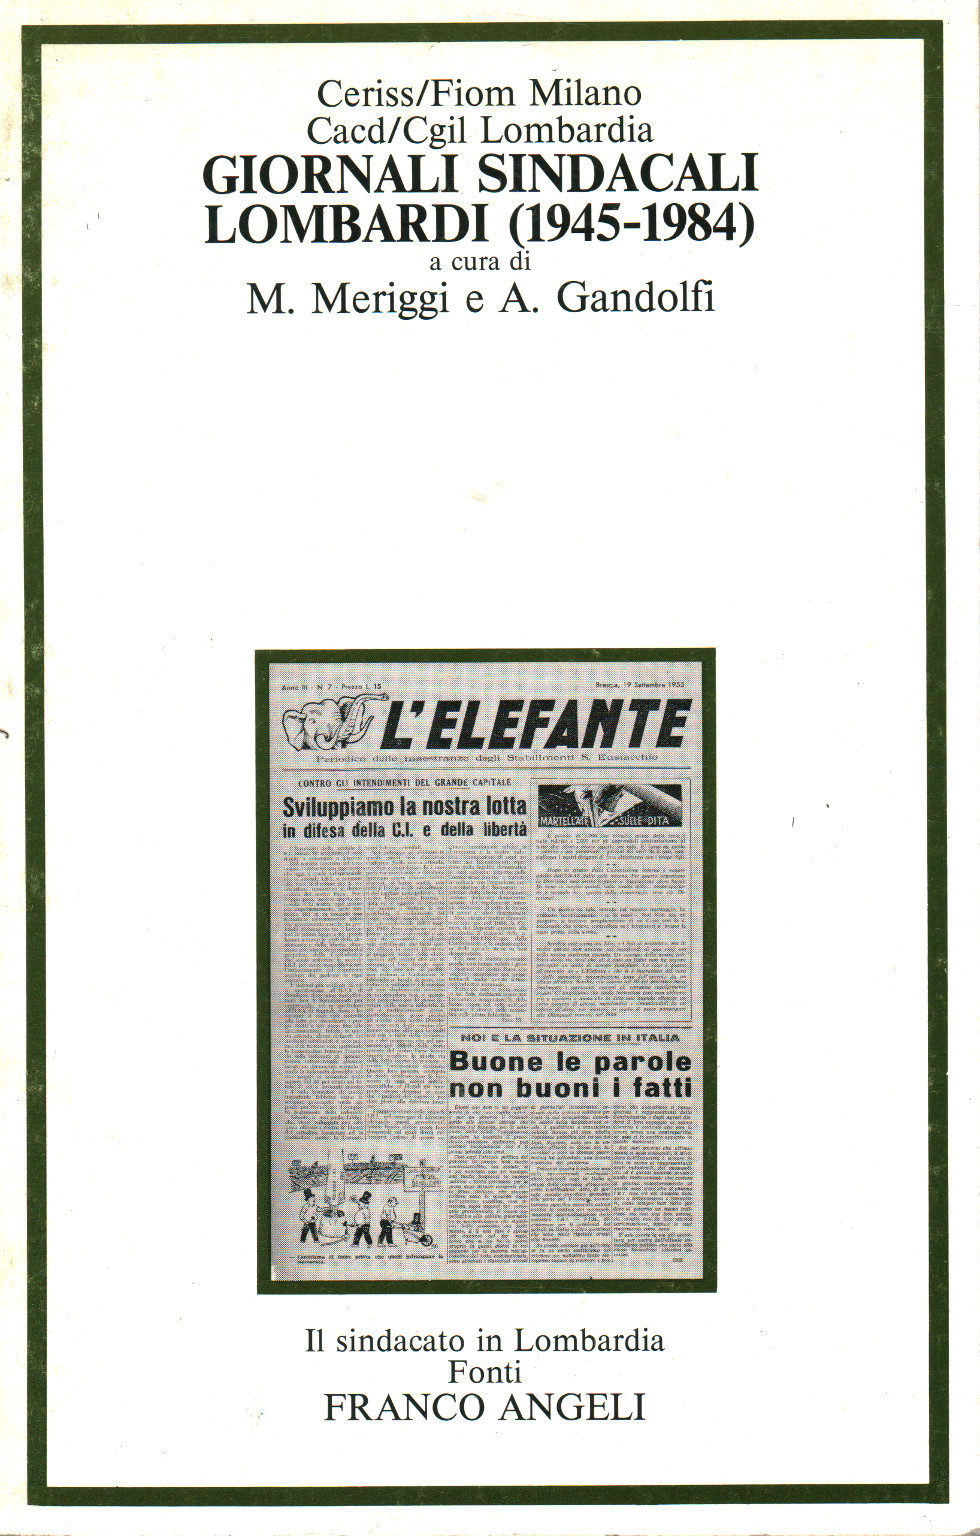 Zeitung der gewerkschaftlichen lombardi (1945-1984), s.zu.